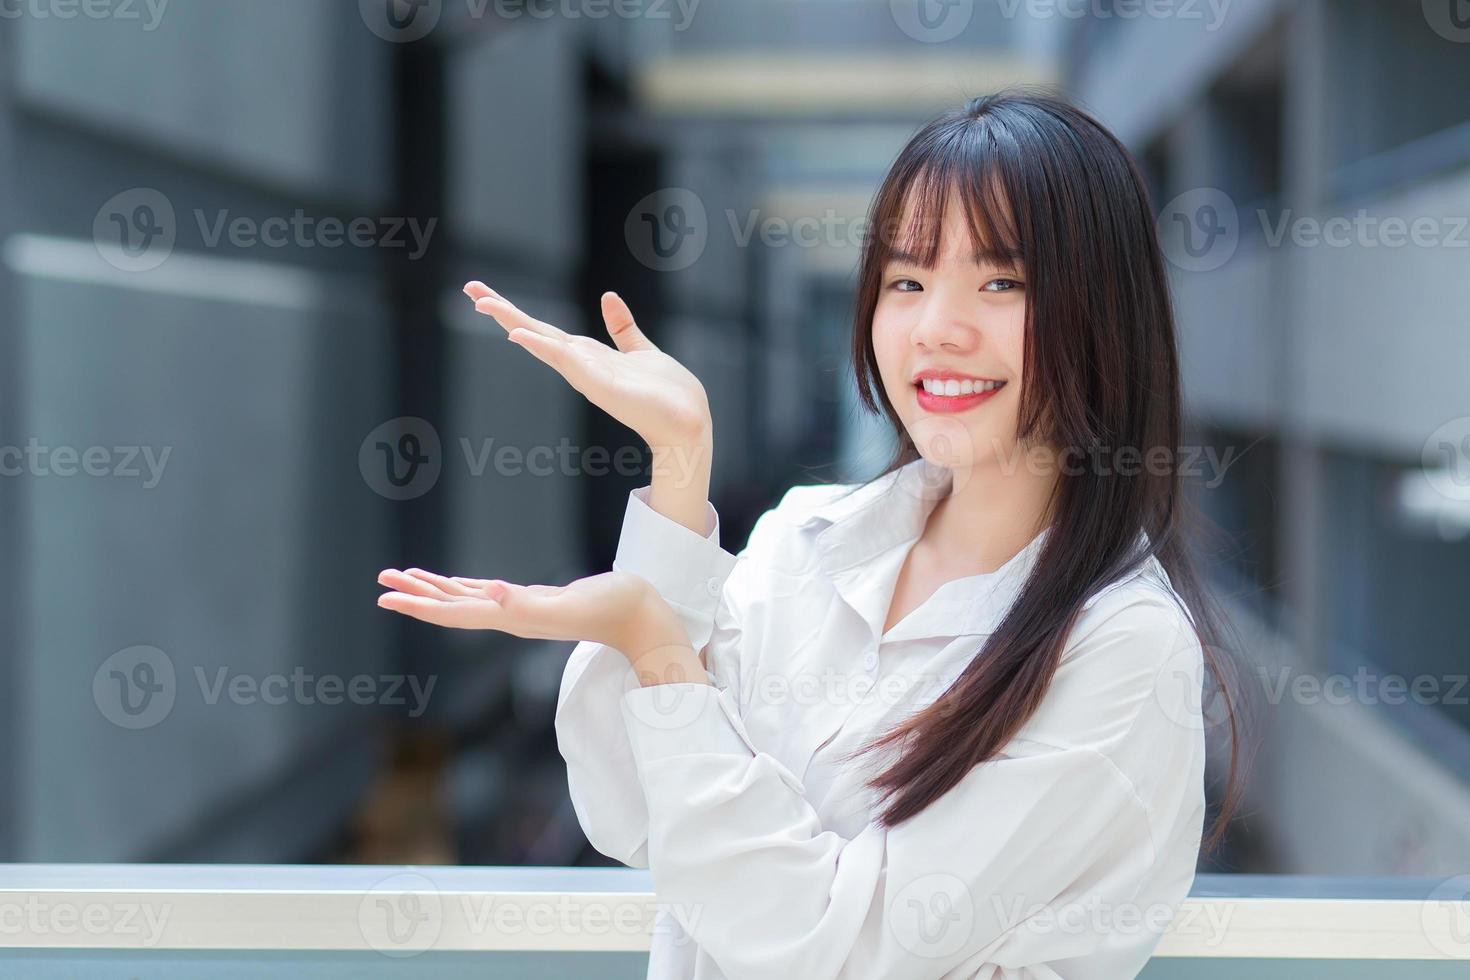 jovem trabalhadora asiática profissional que usa camisa branca está apontando a mão para apresentar algo ao ar livre na cidade com um prédio de escritórios ao fundo. foto